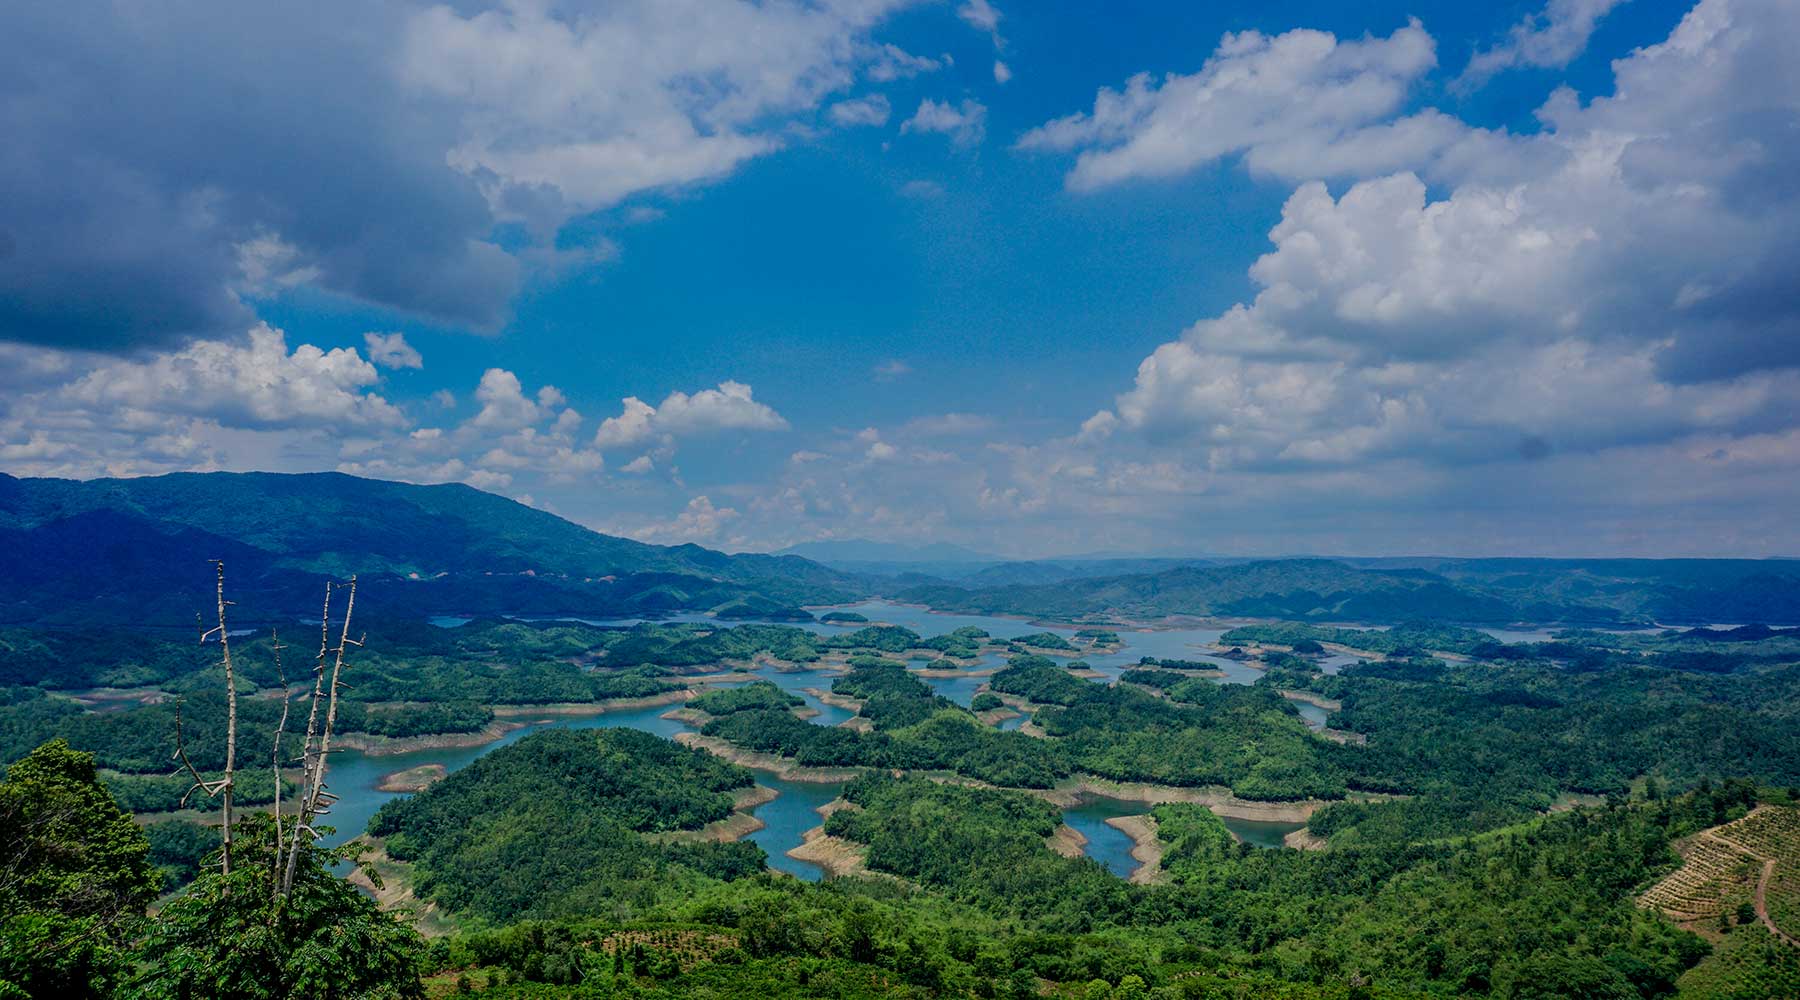 Ta Dung is een van de meren in Vietnam